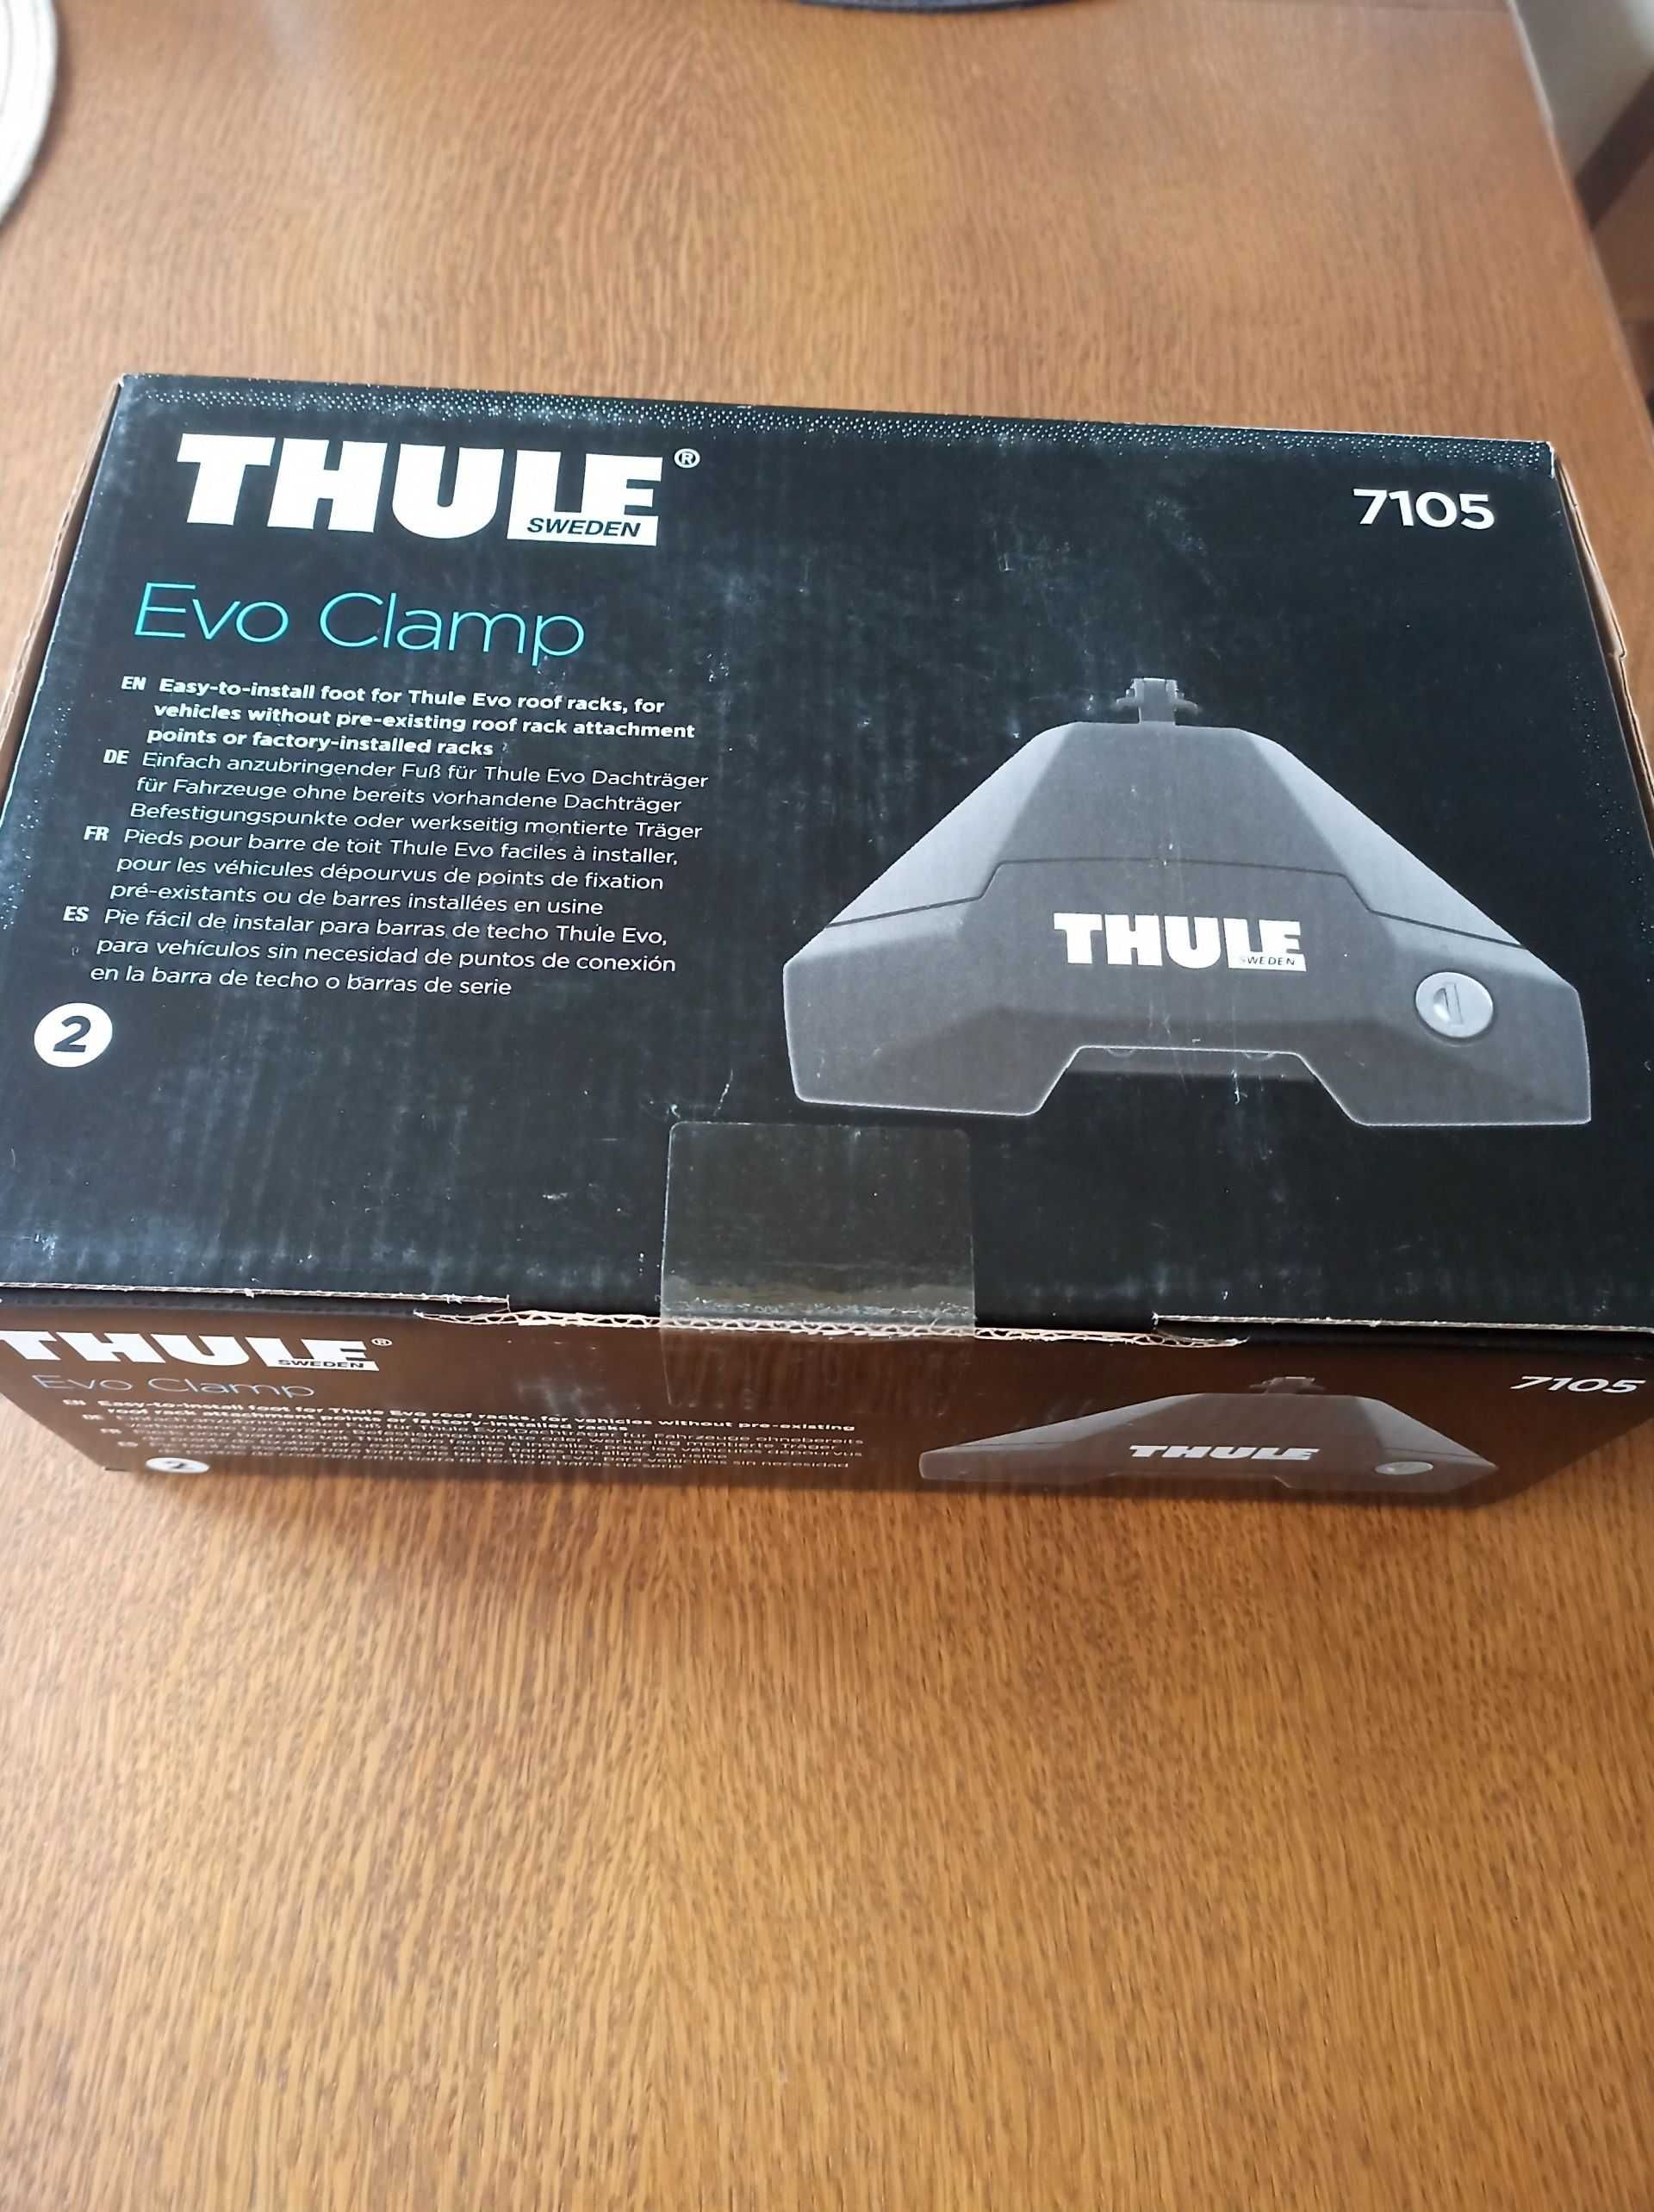 Nowe 7105 oryginalne Thule EVO CLAMP 710500 stopy do bagażnika